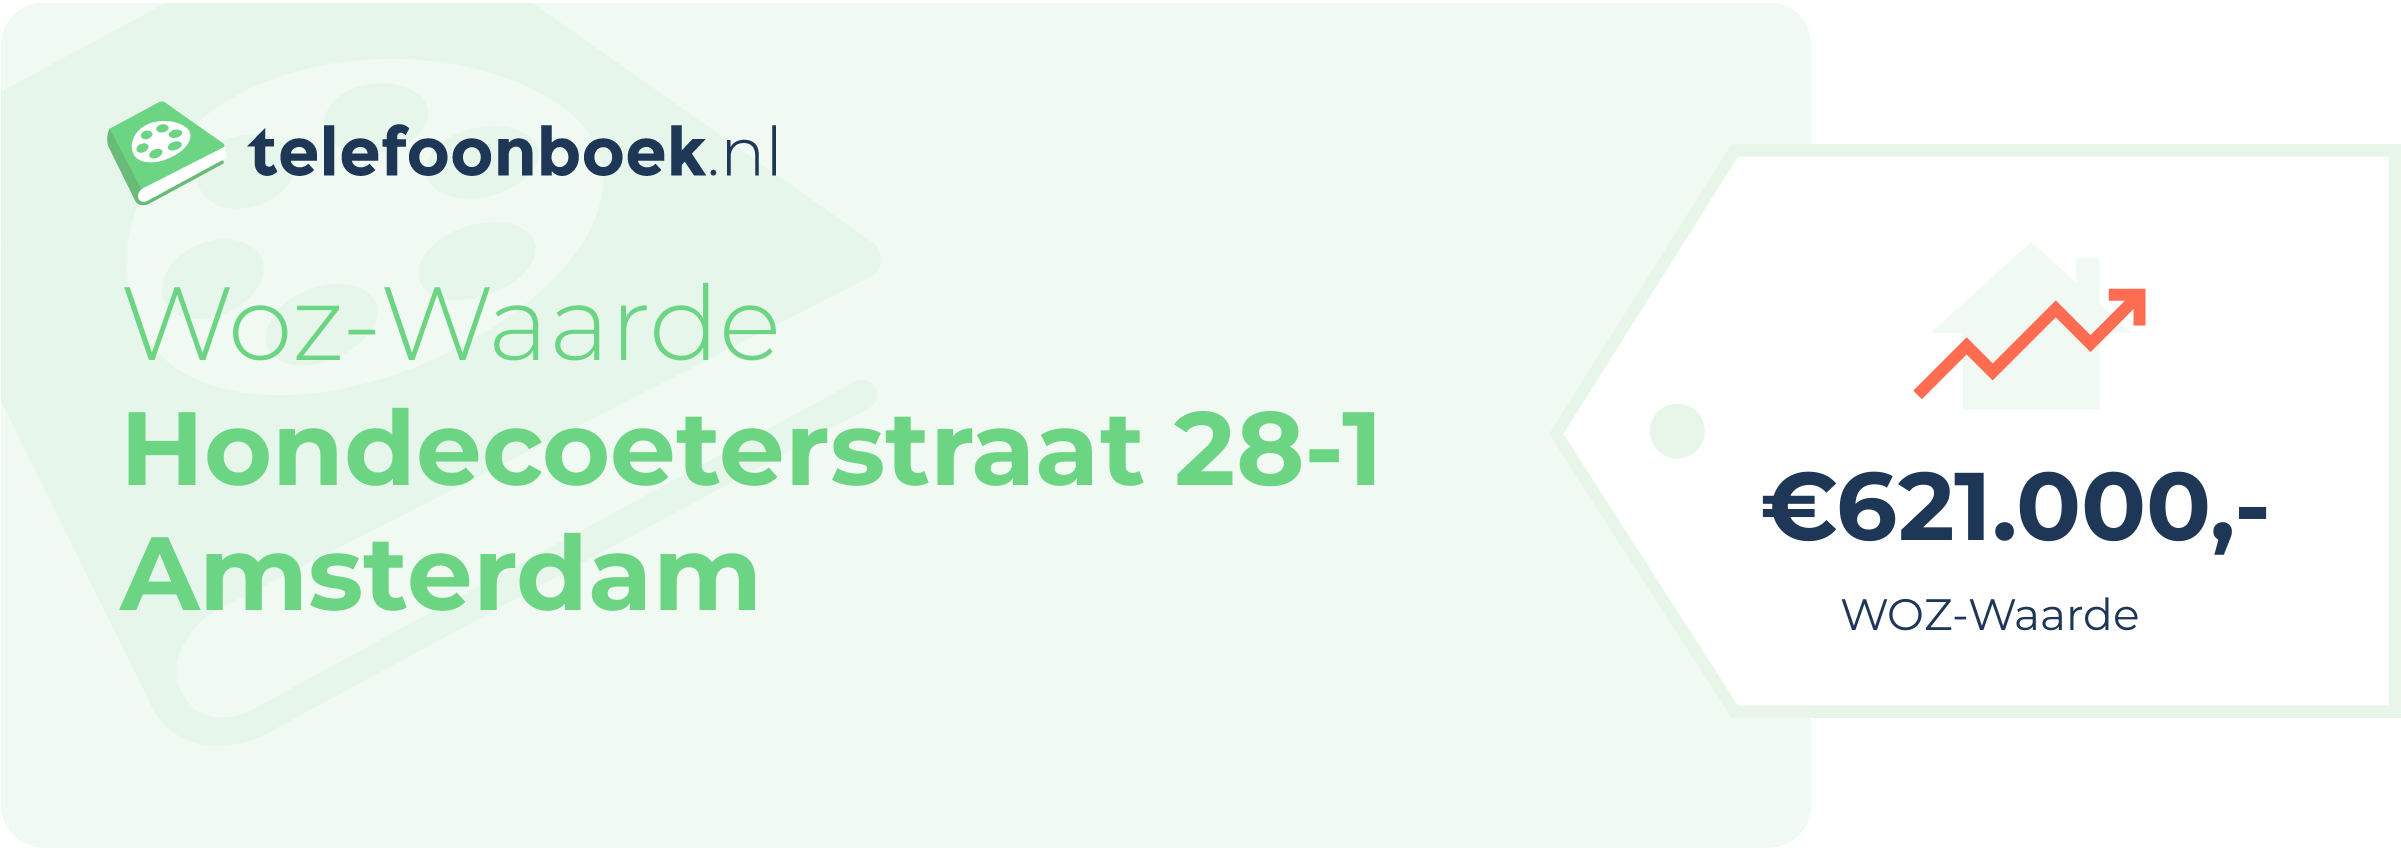 WOZ-waarde Hondecoeterstraat 28-1 Amsterdam